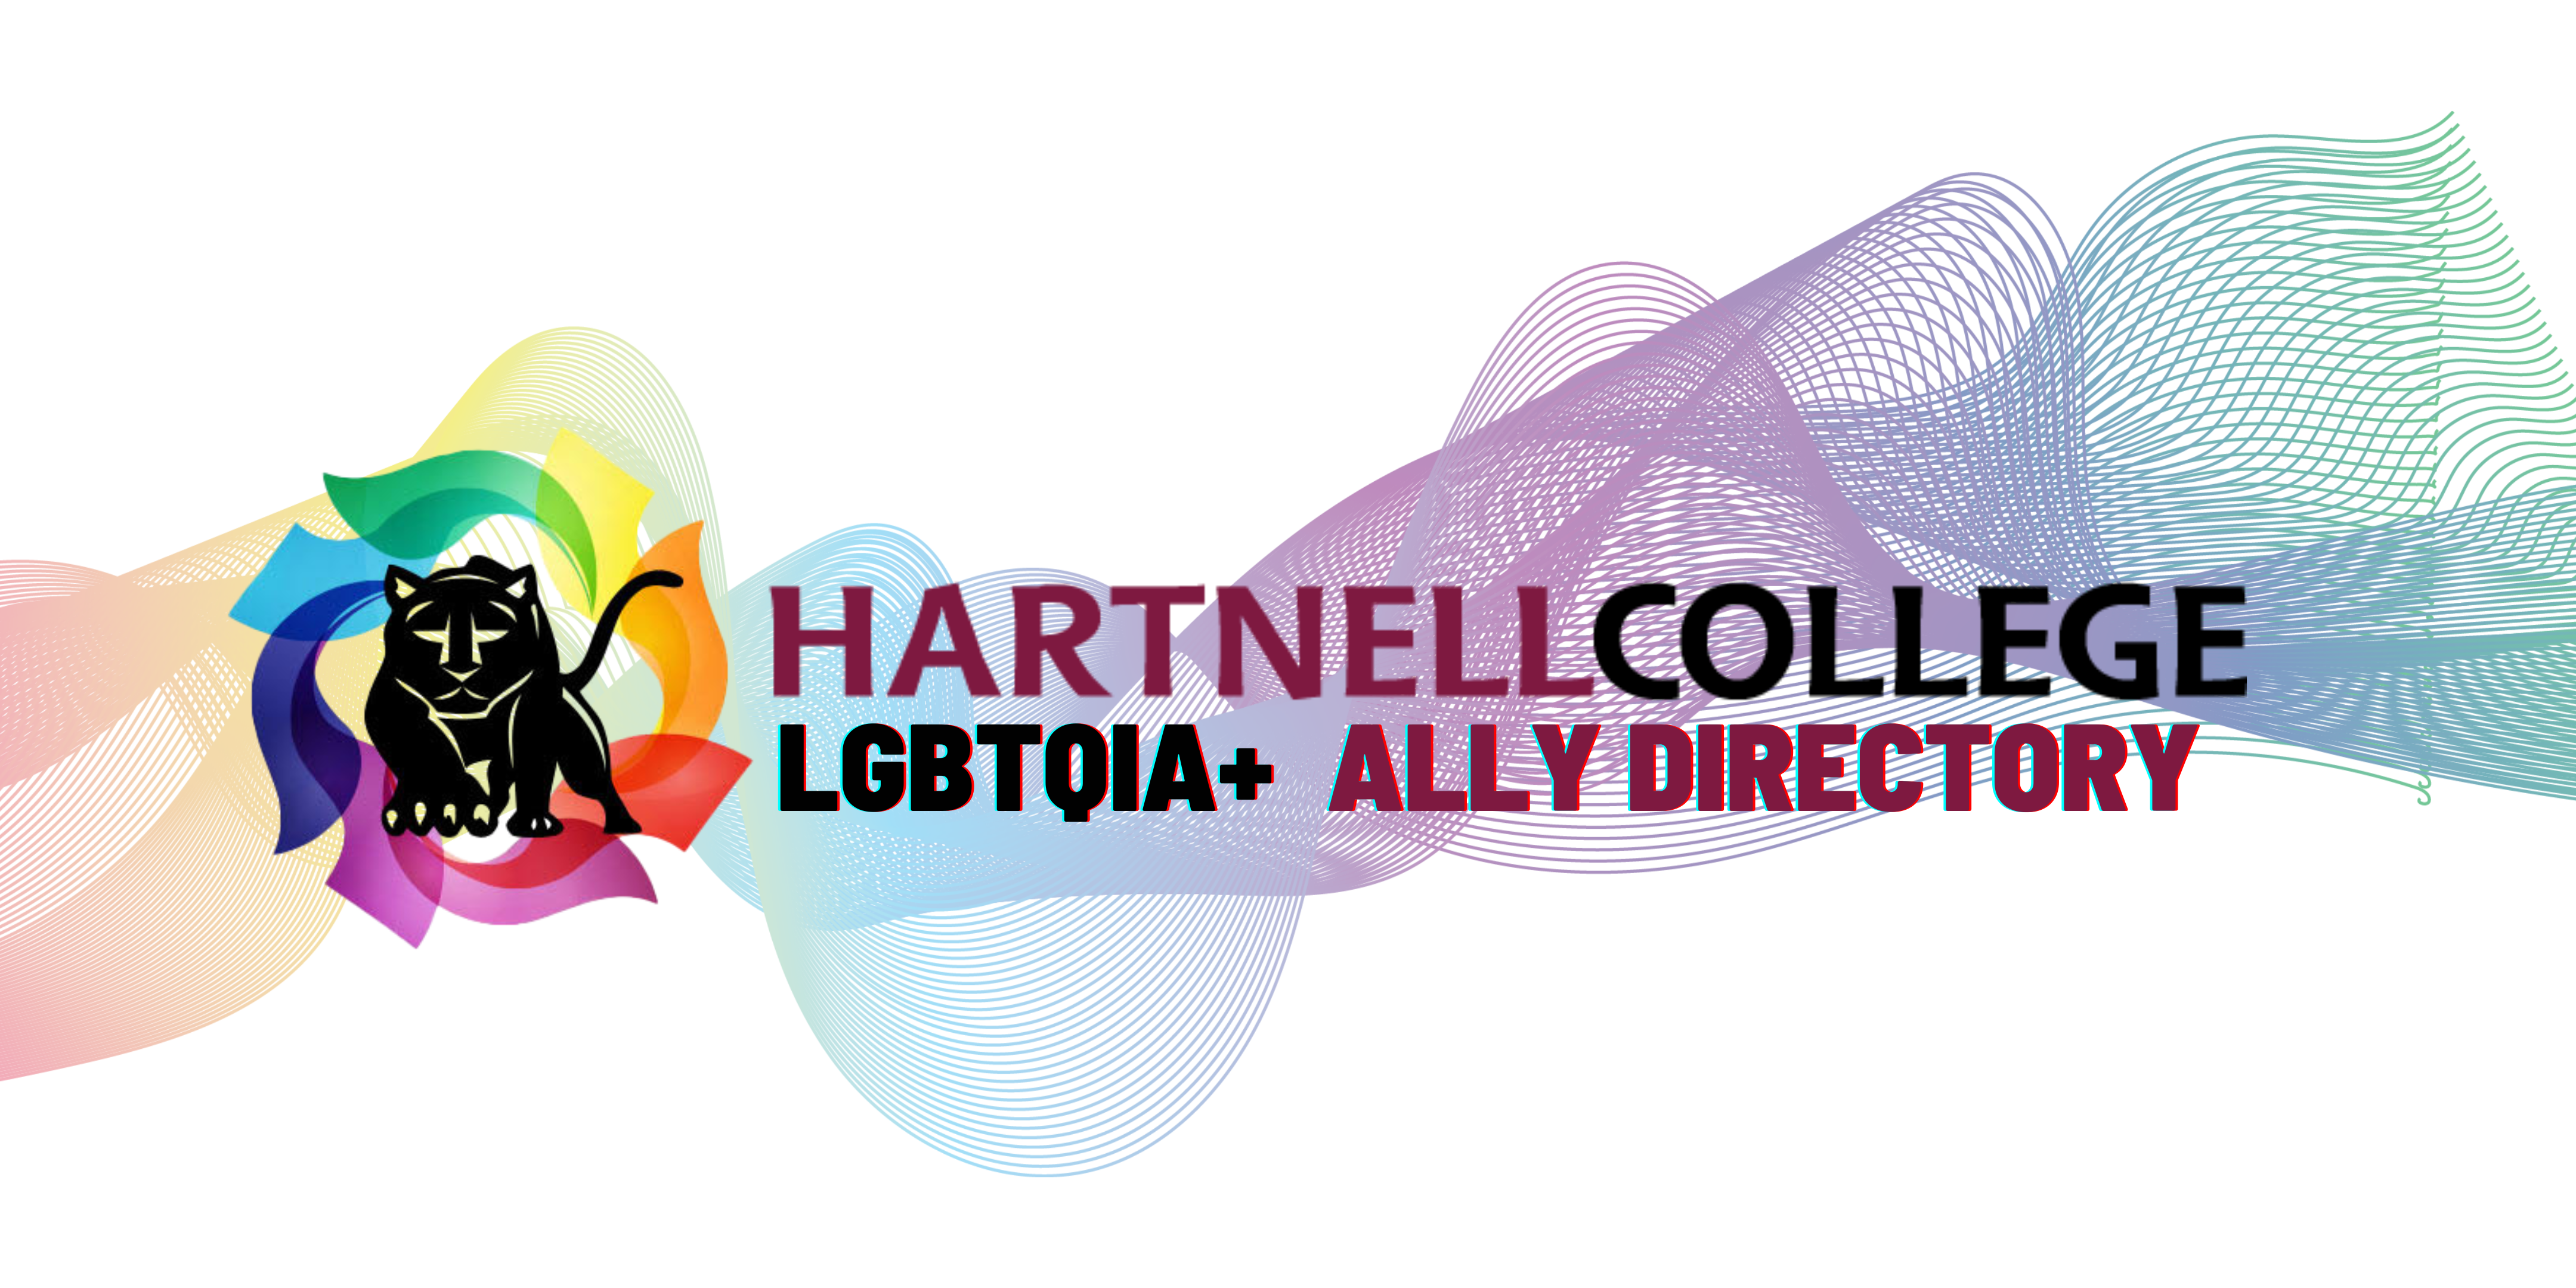 LGBTQIA+ Ally directory logo